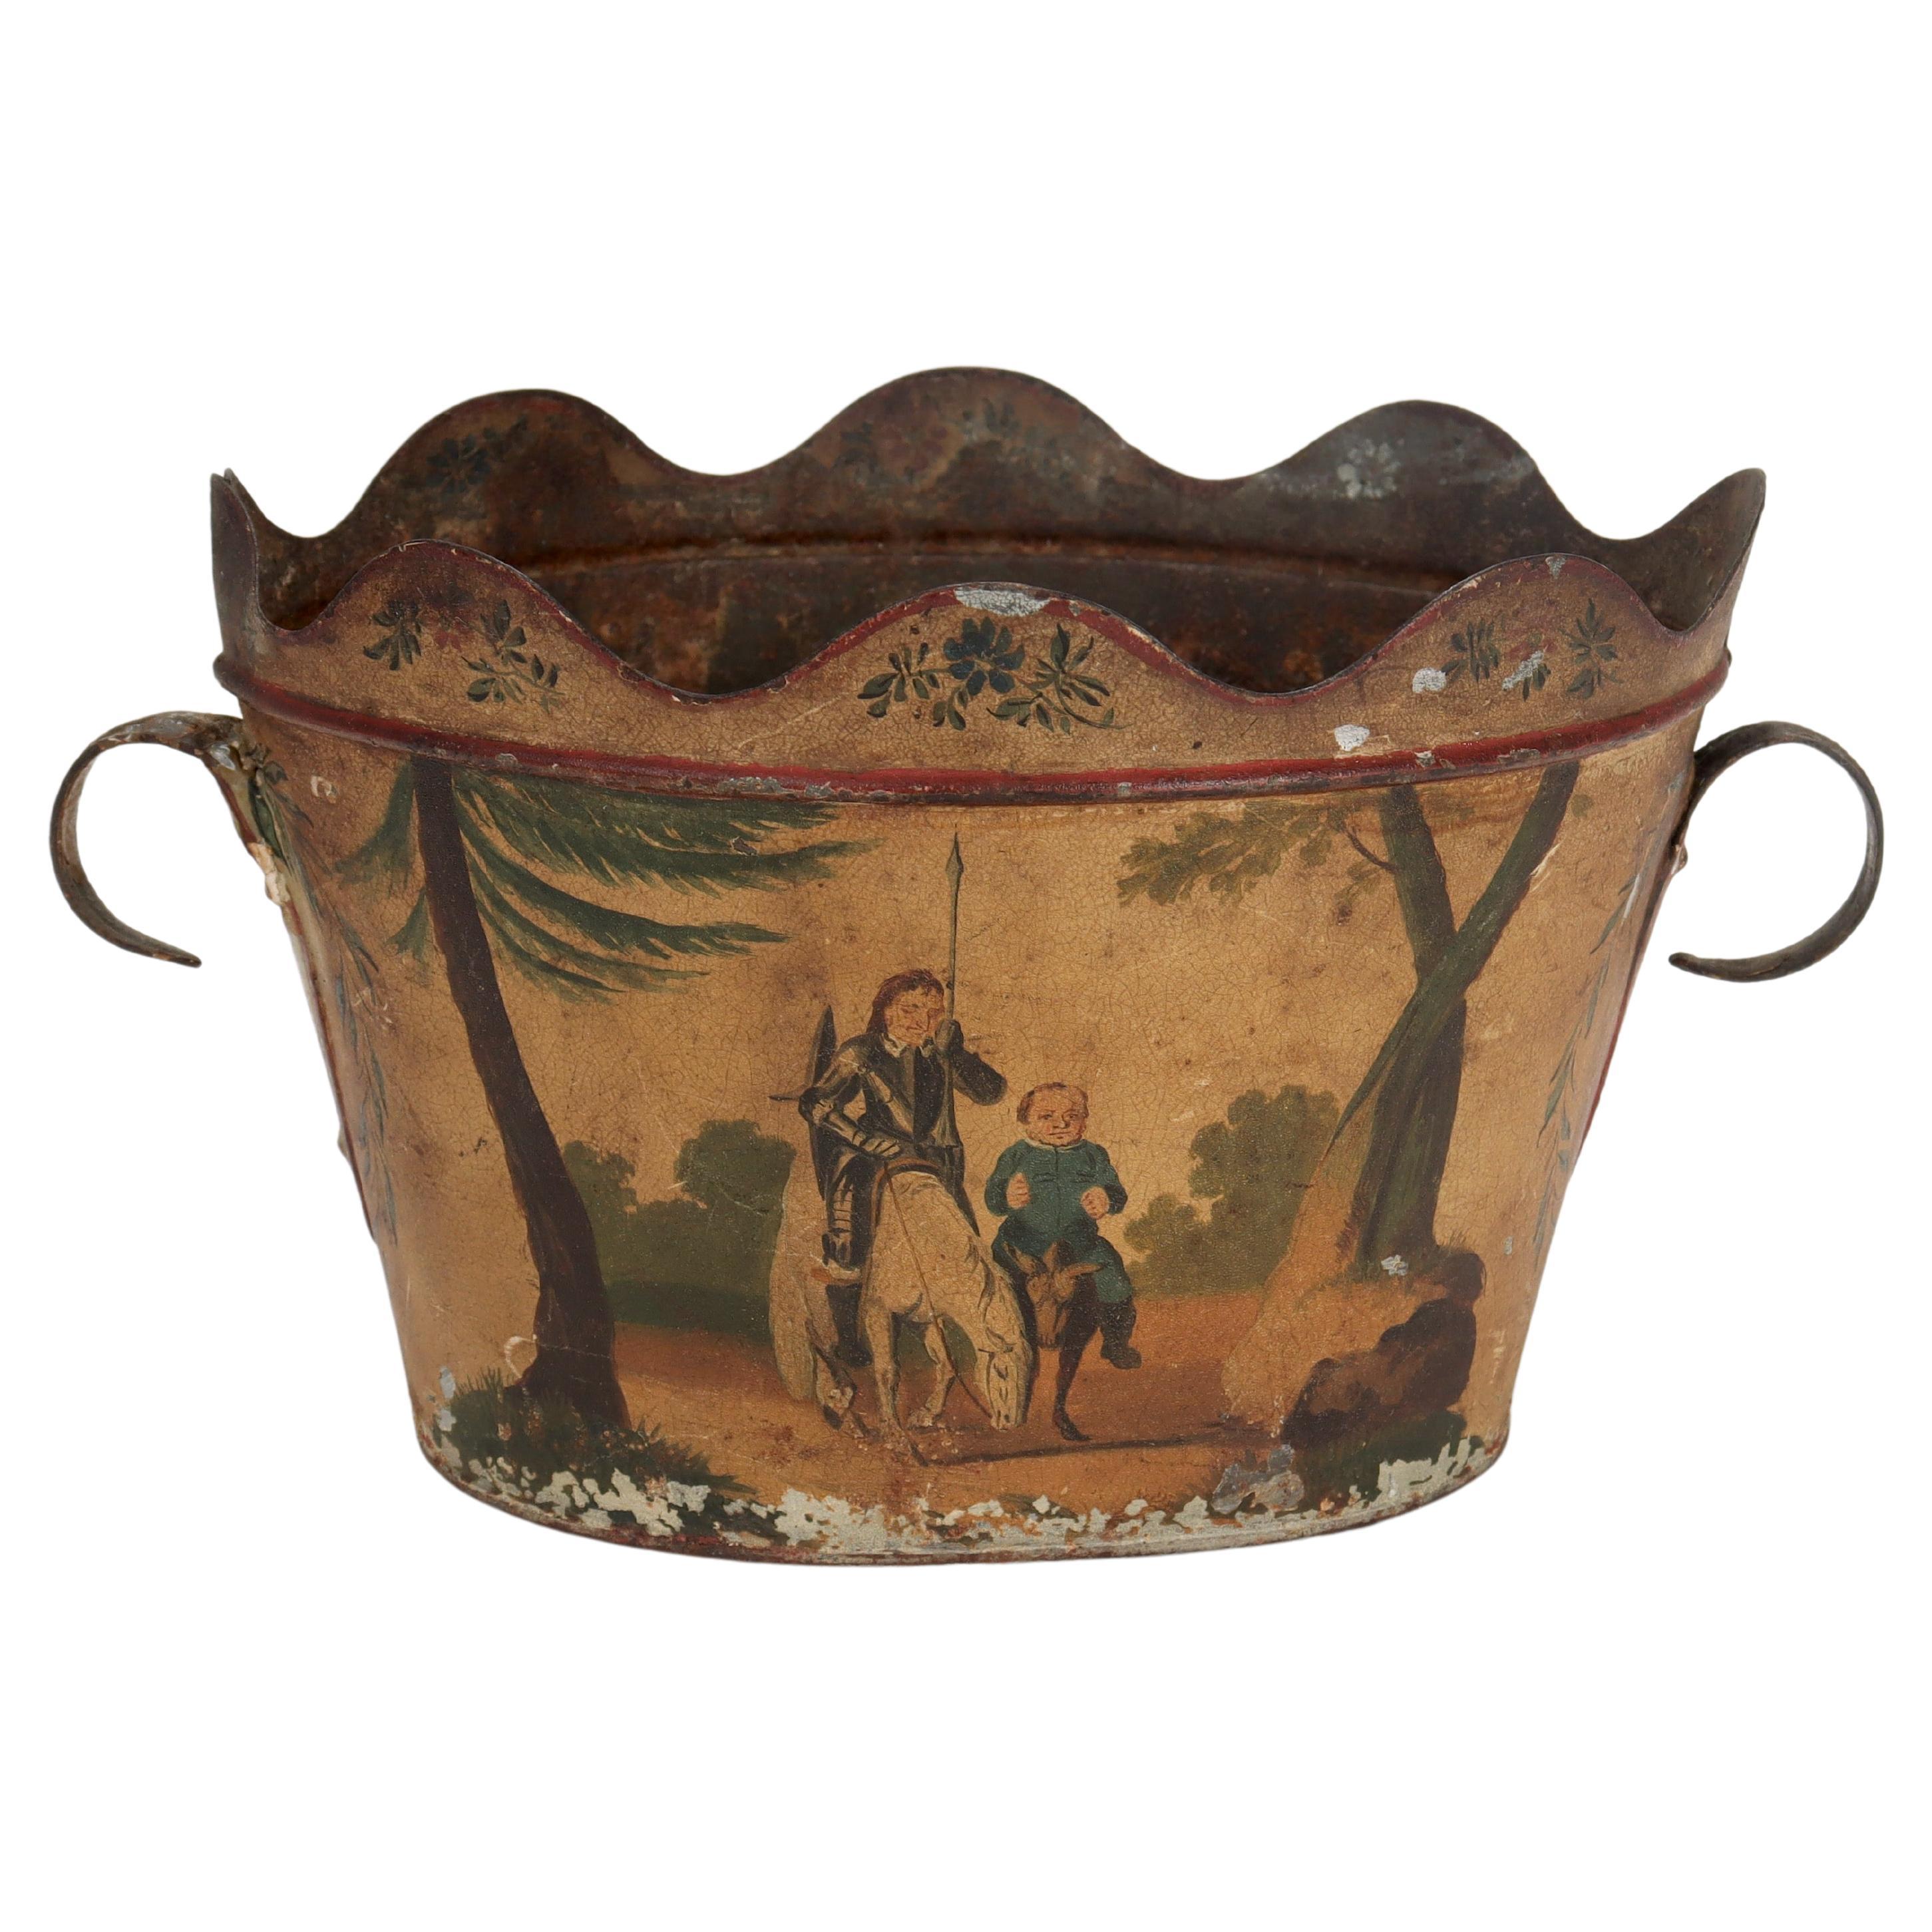 Cache pot ou jardinière ancienne en faïence peinte d'une scène de Don Quichotte